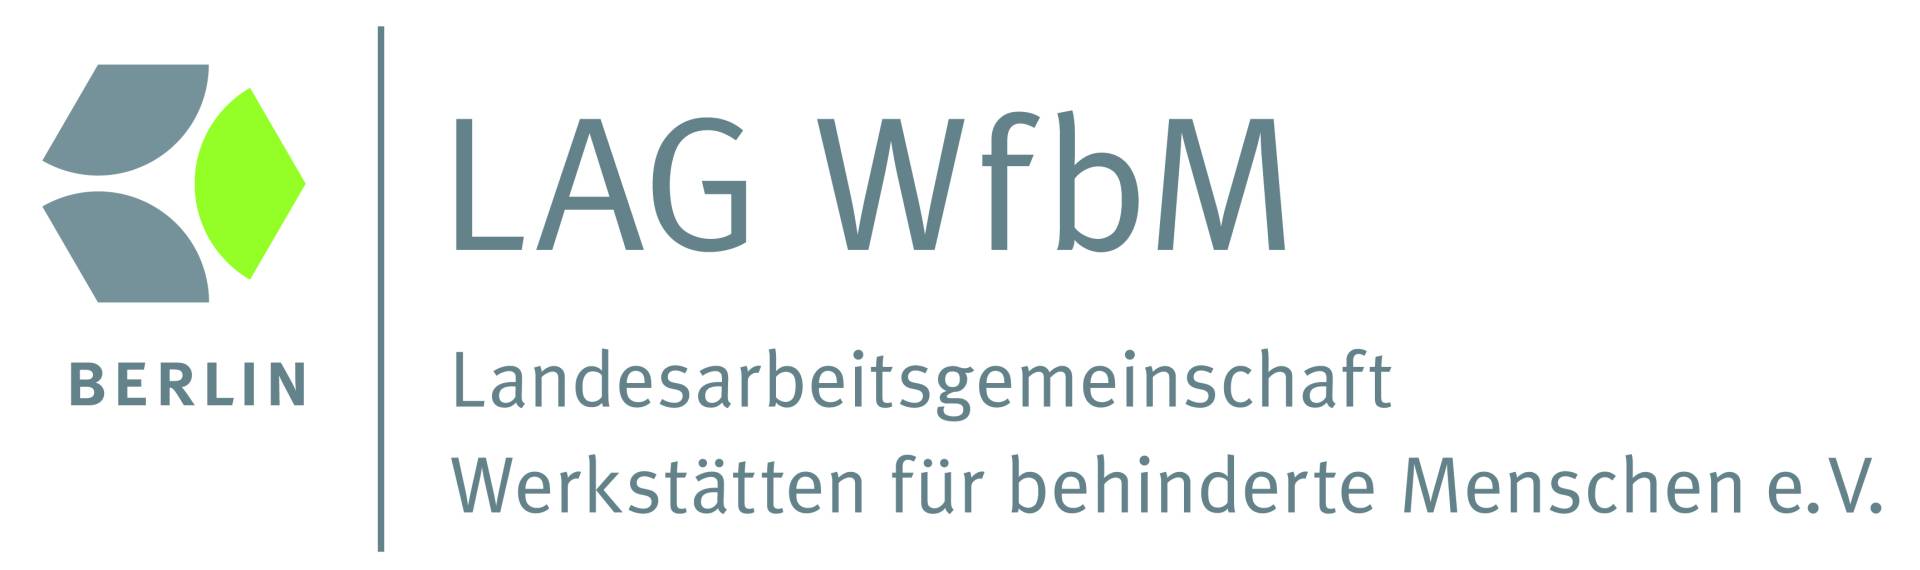 LAG WfbM - Landesarbeitsgemeinschaft Werkstätten für behinderte Menschen e.V.